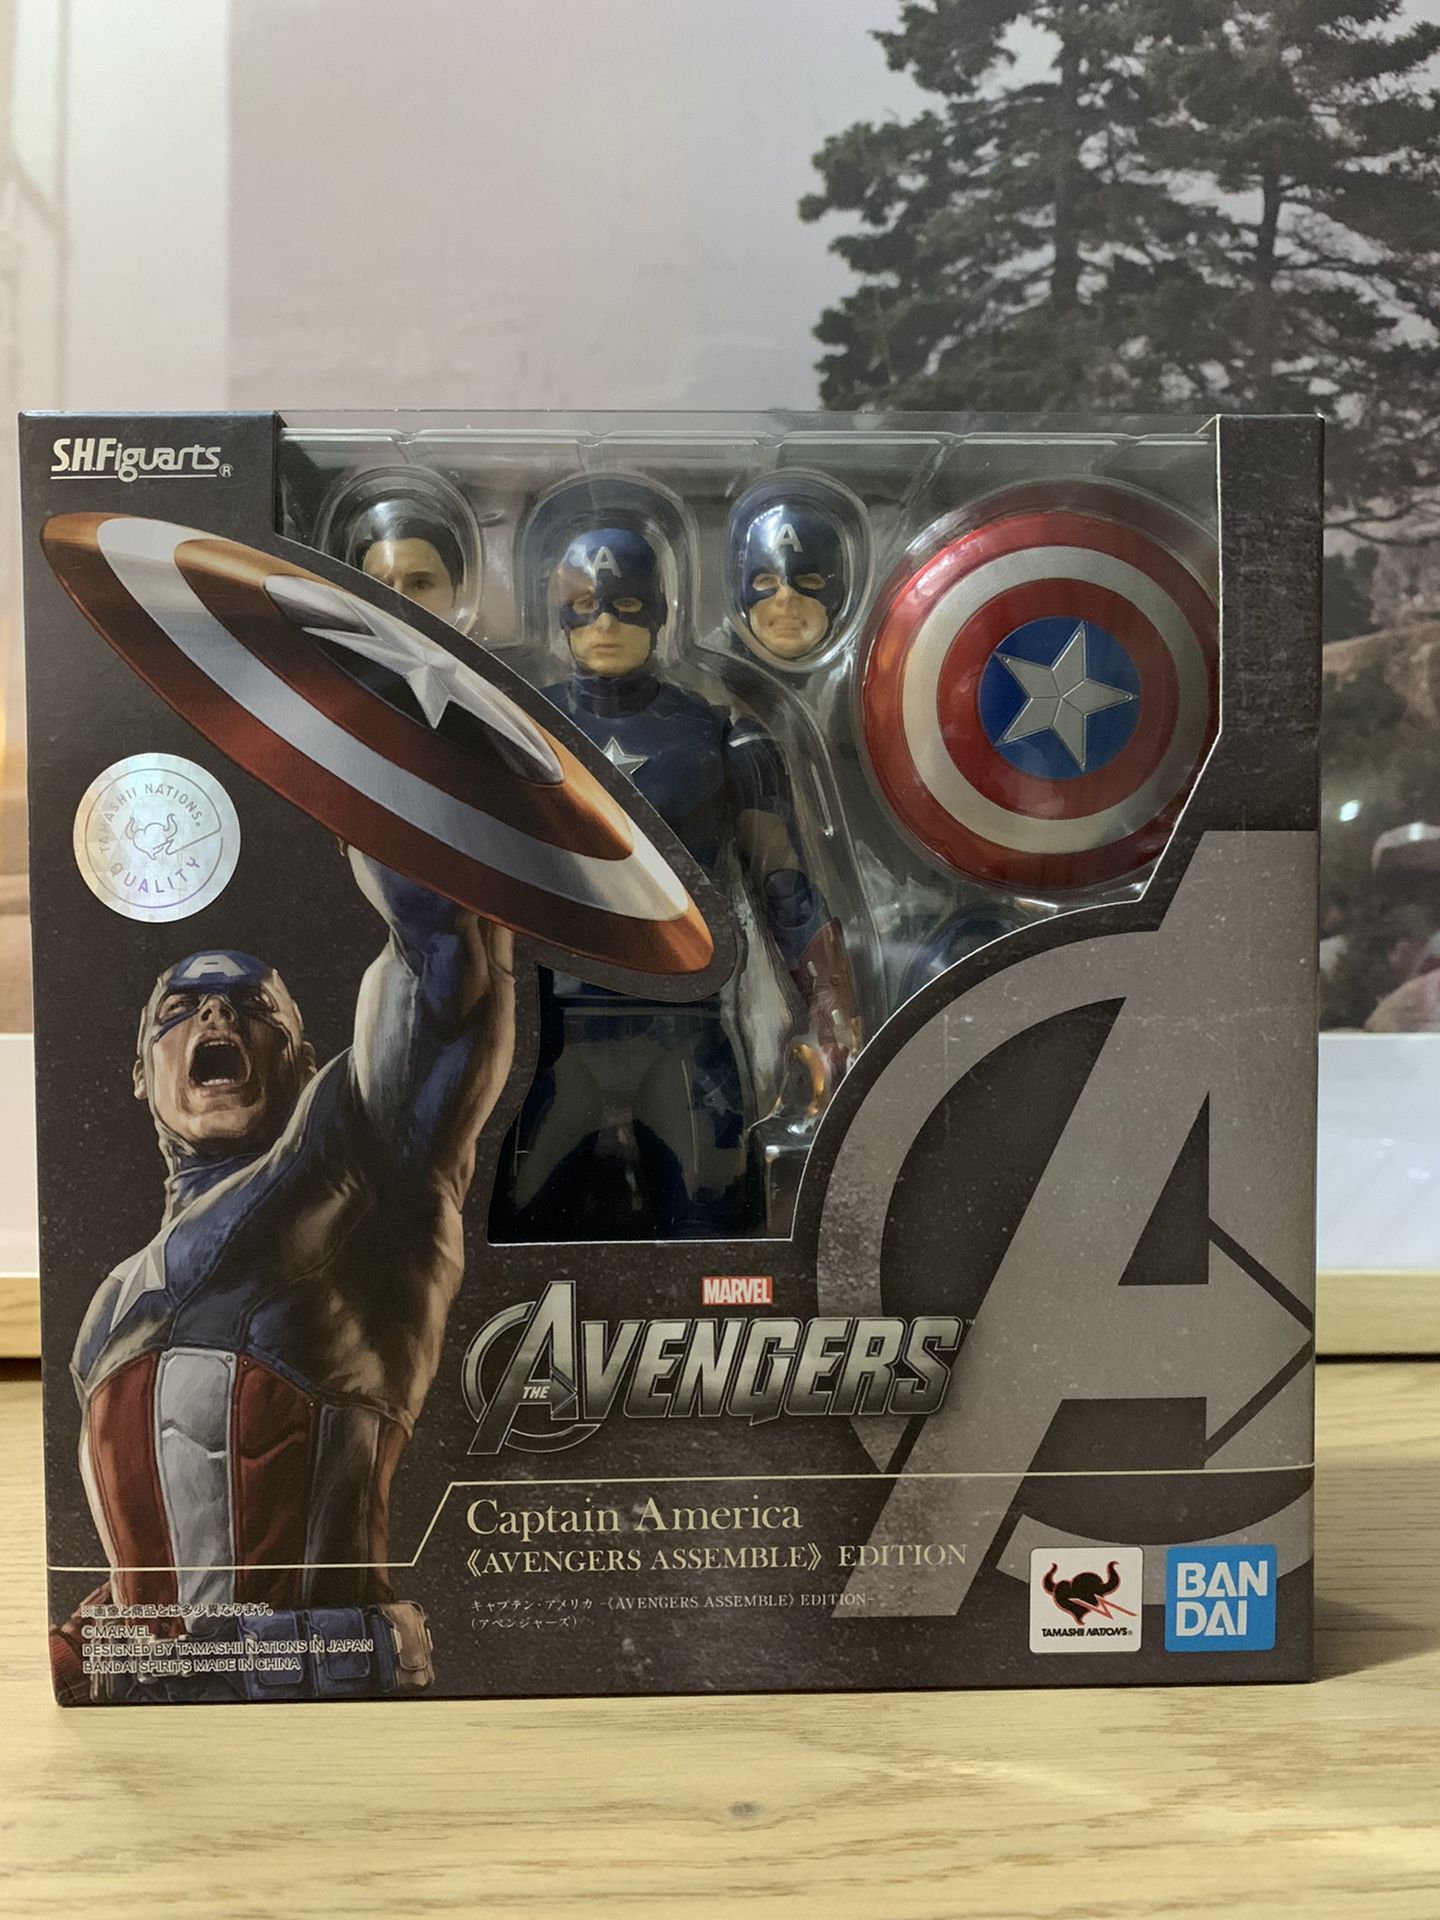 Marvels Avengers Captain America Avengers Assemble Eddition